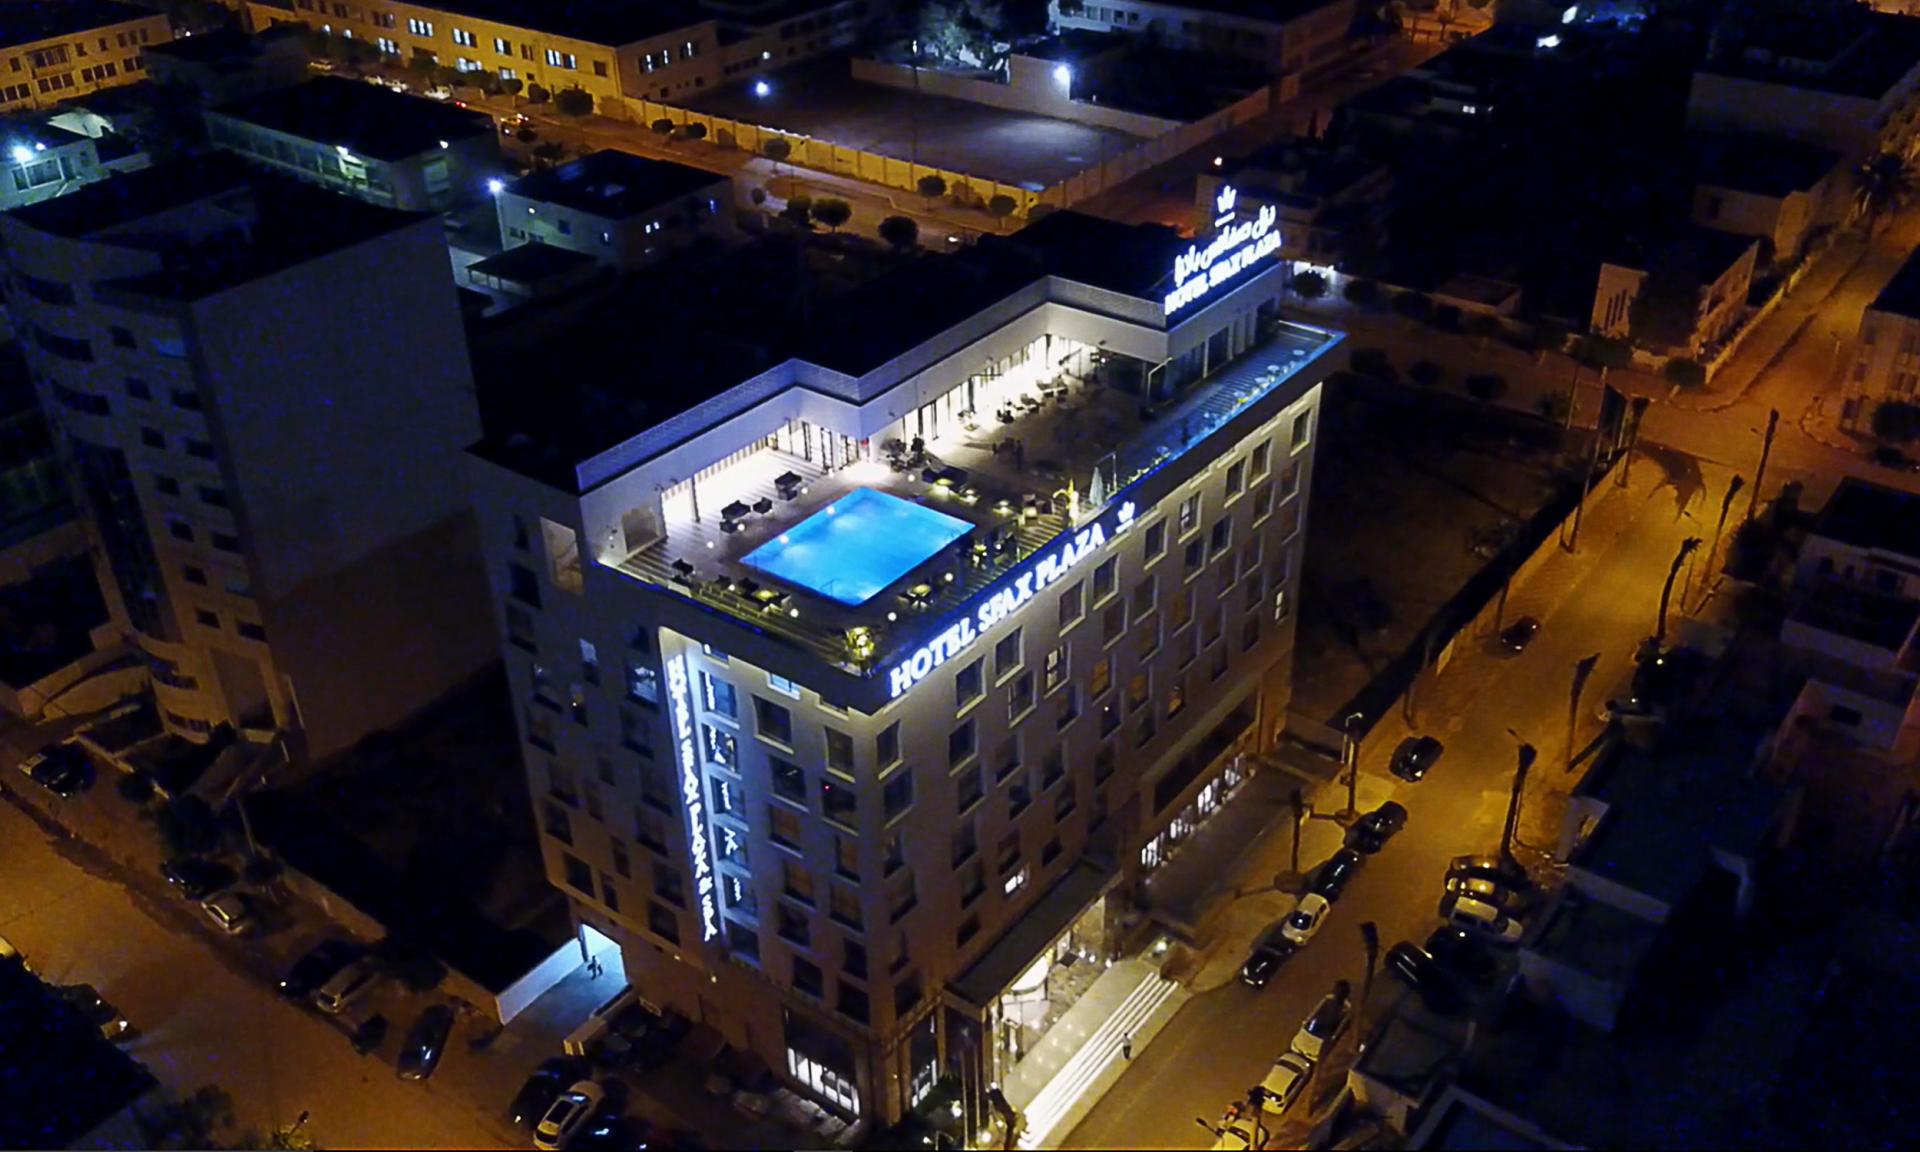 Movenpick Hotel Sfax